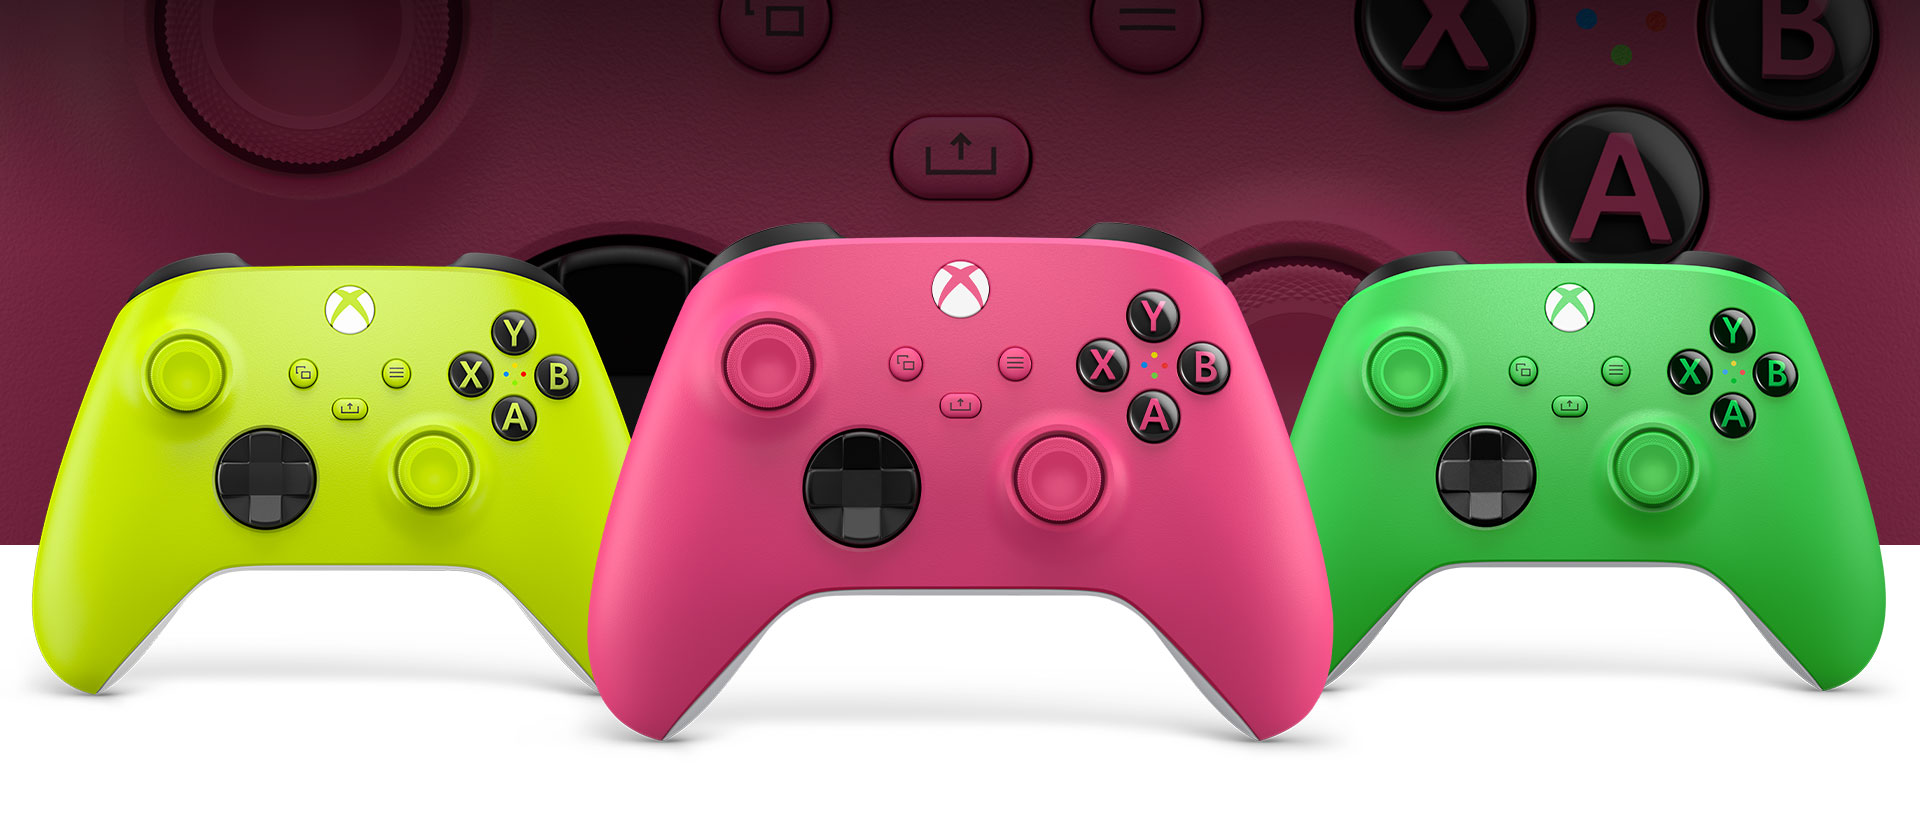 Manette Xbox rose à l’avant avec une manette volt sur la gauche et une manette verte sur la droite